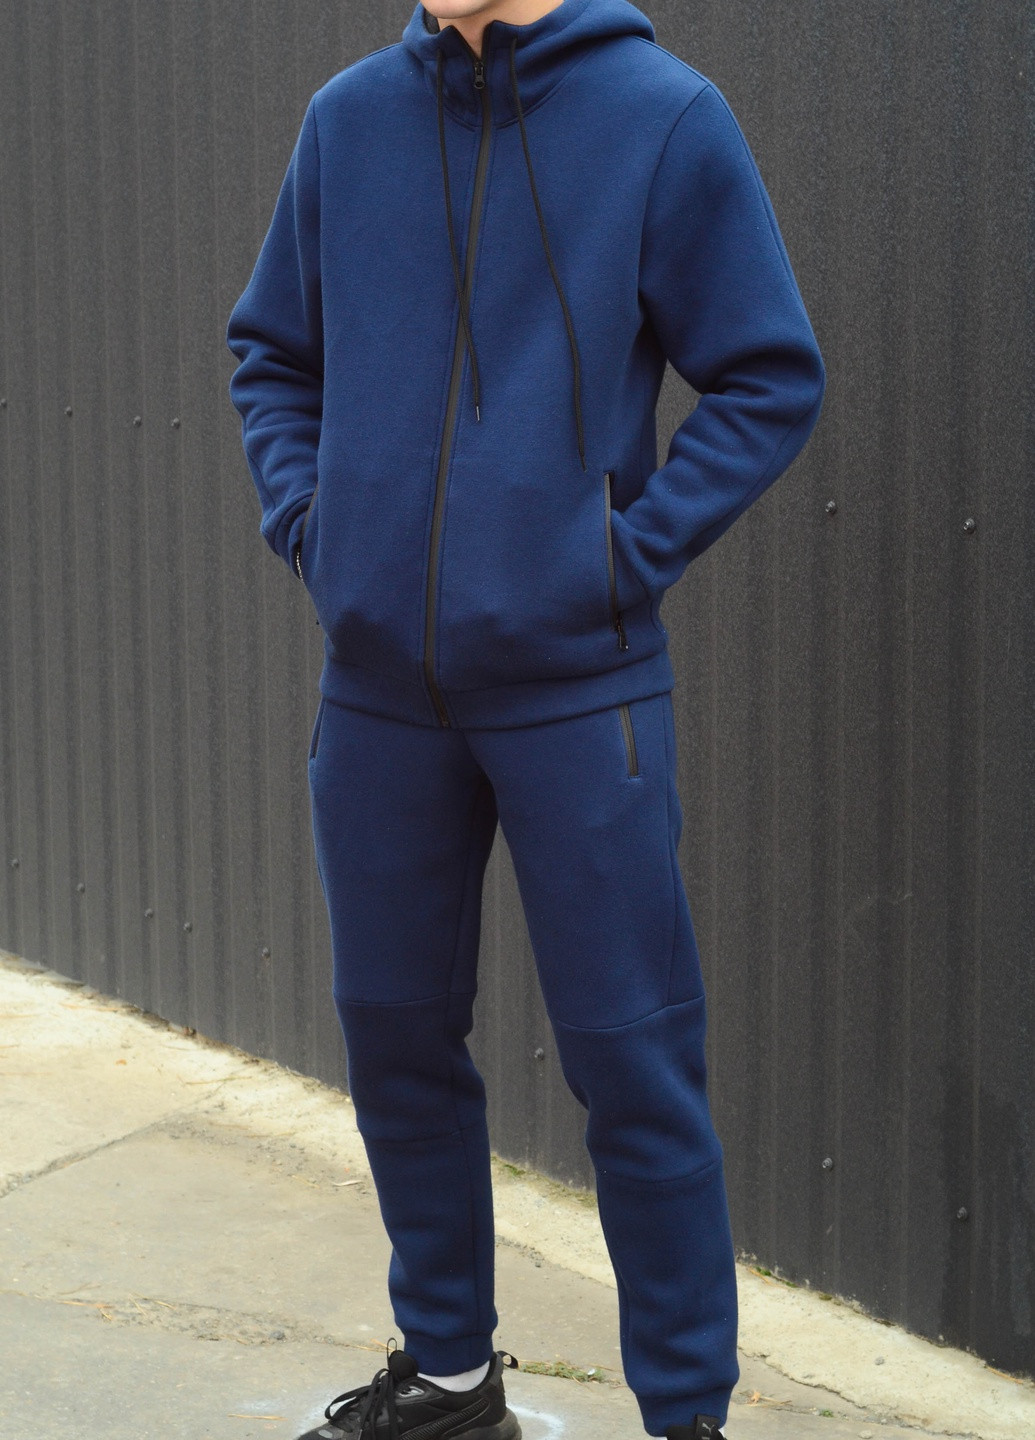 Синий демисезонный мужской зимний костюм. теплый на флисе, есть все размеры. Hand Made